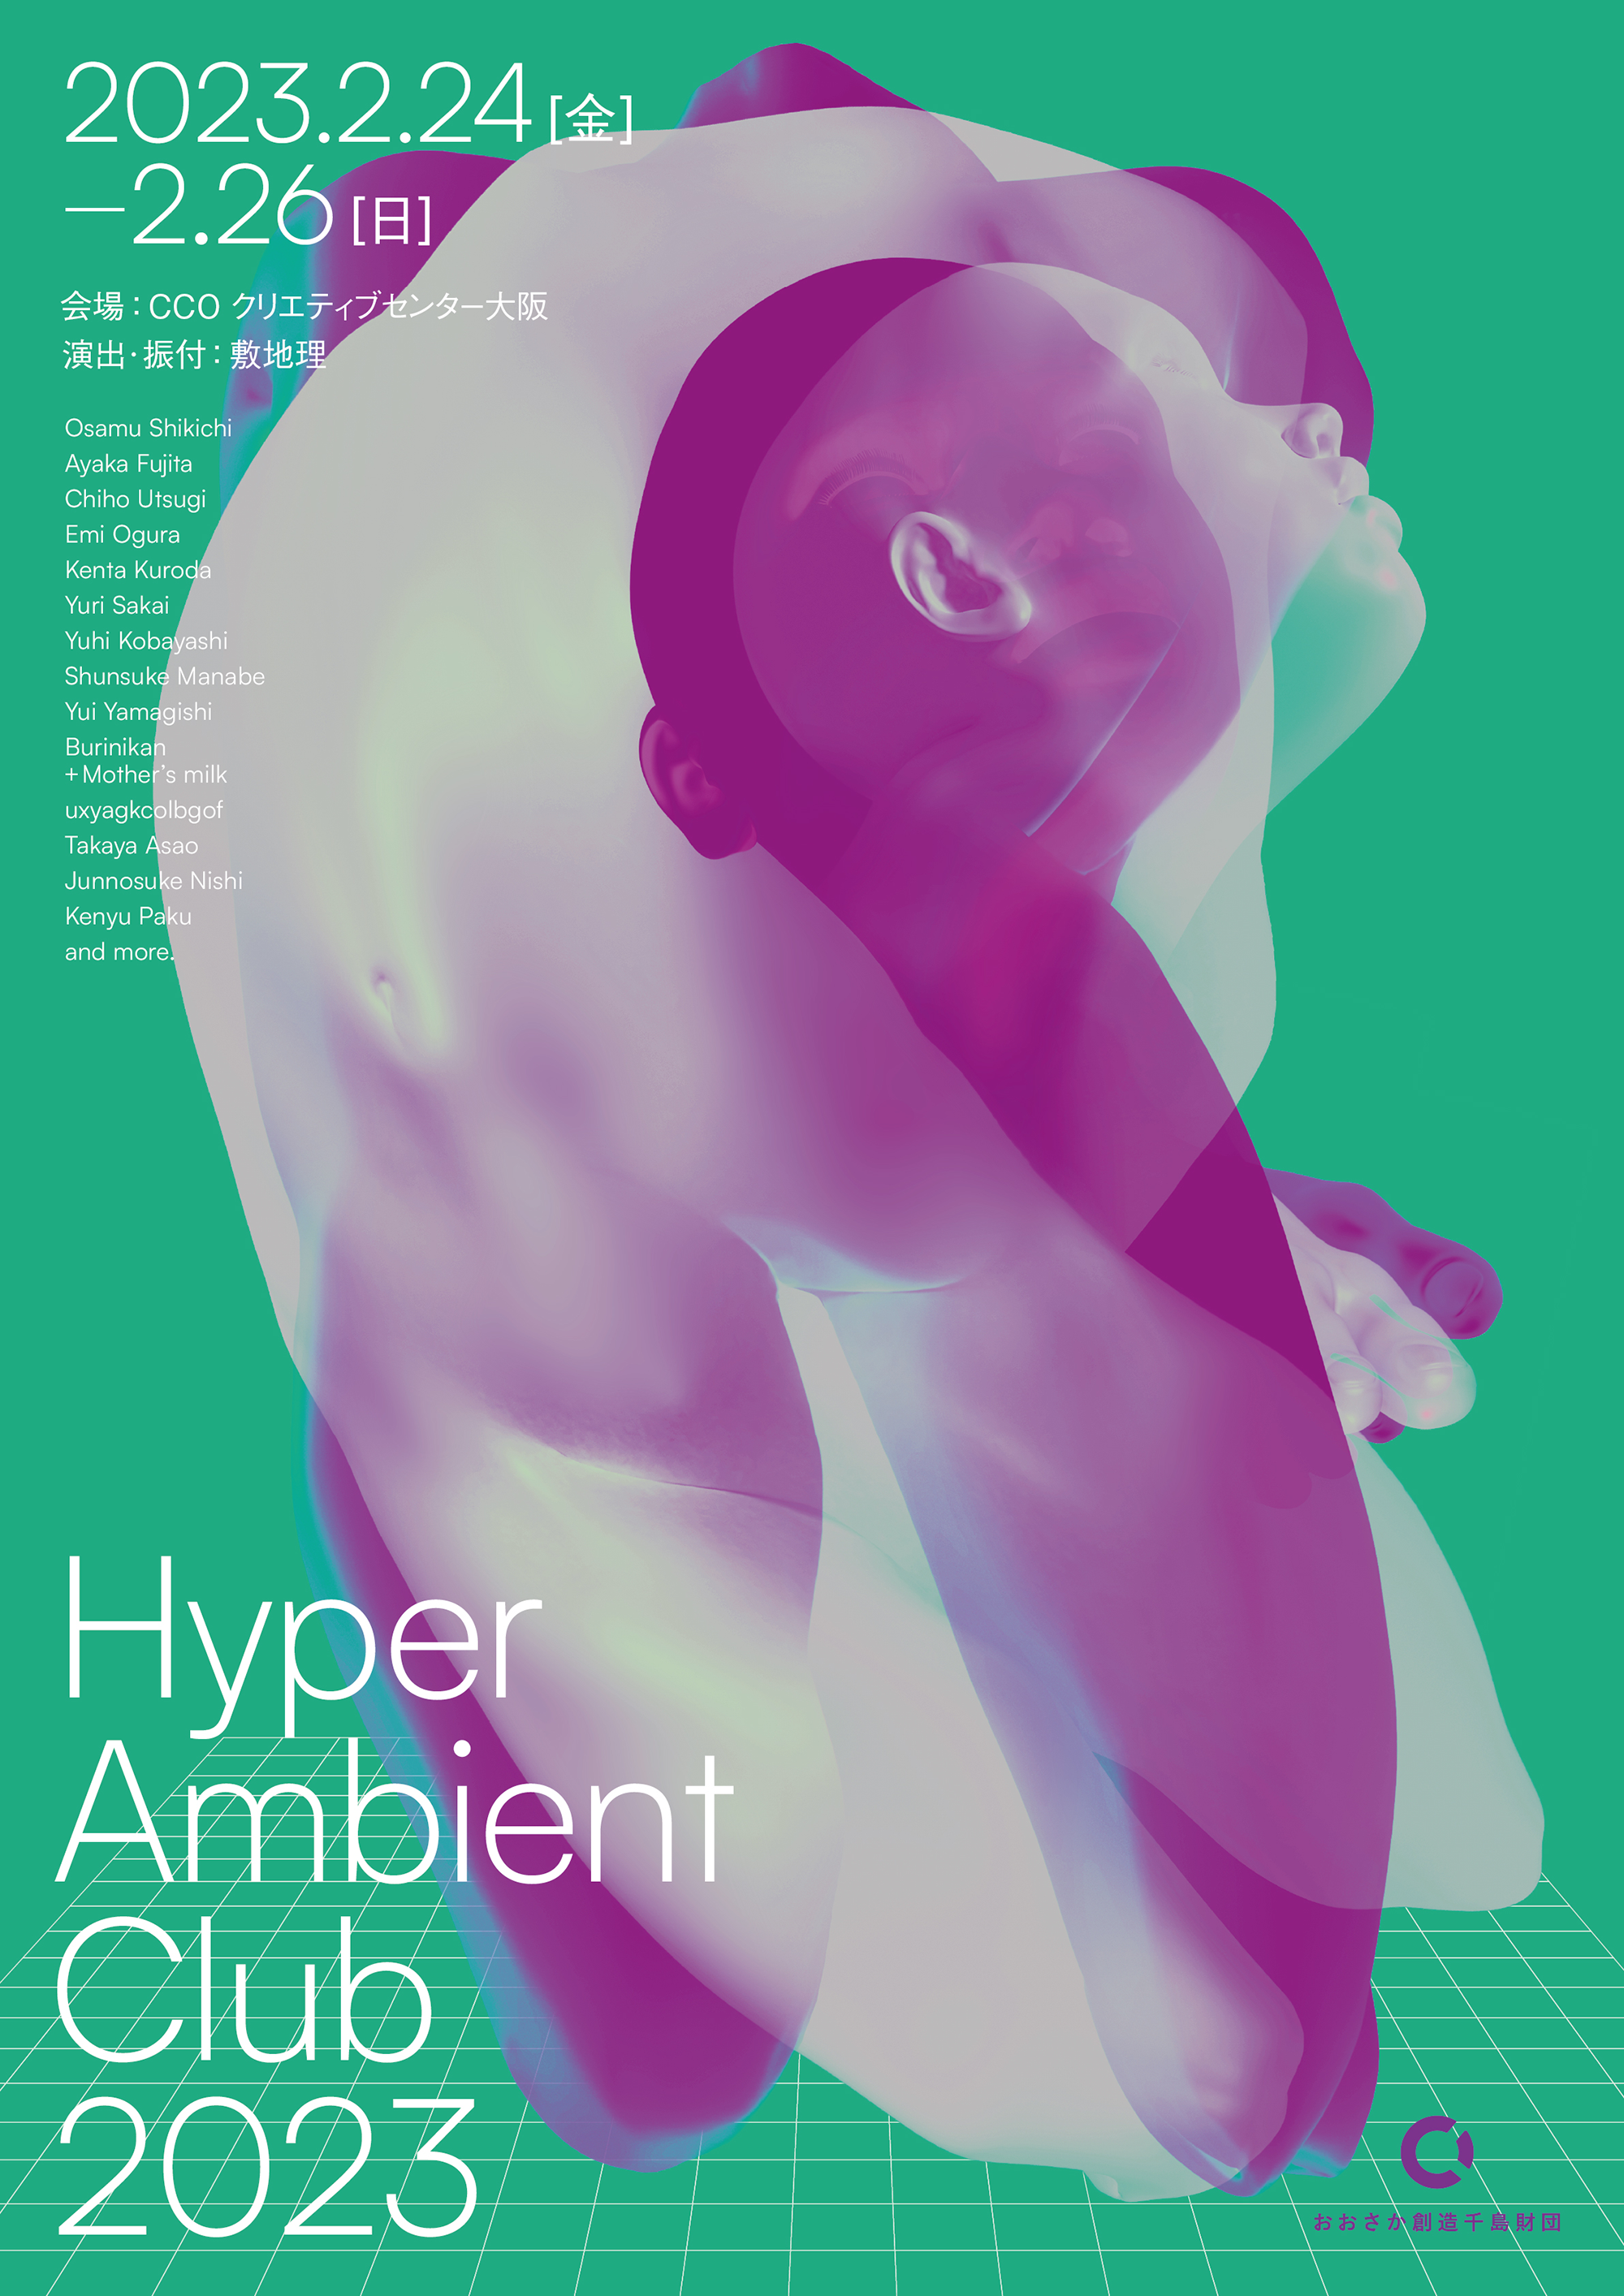 Hyper Ambient Club 2023 - フライヤー表